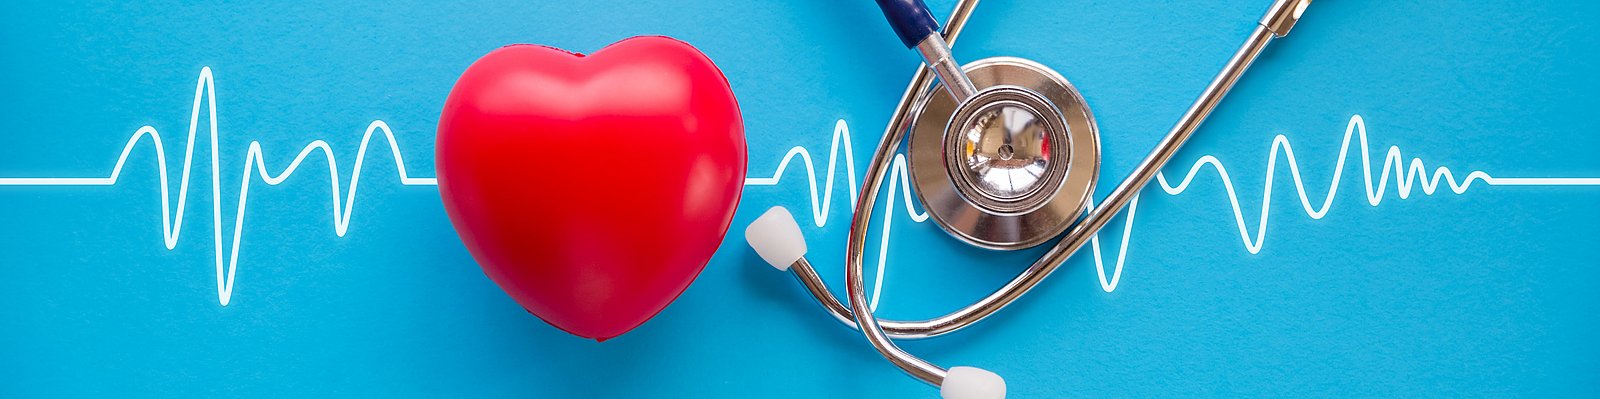 Stethoskop und rotes Herz mit Kardiogramm